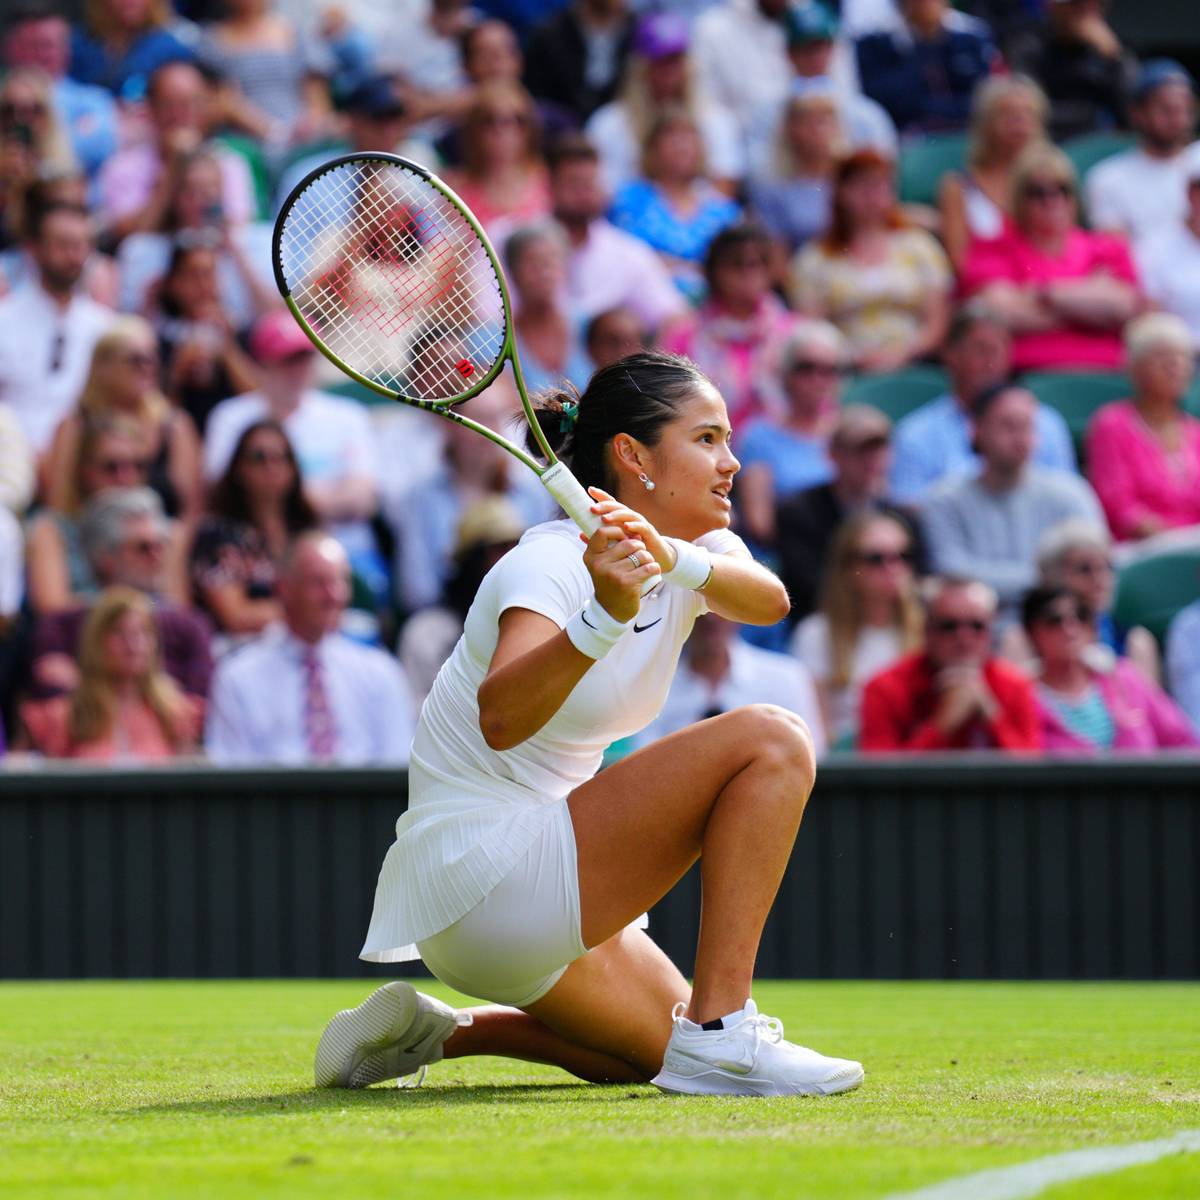 Tennis Wimbledon plant Dresscode-Revolution für Frauen